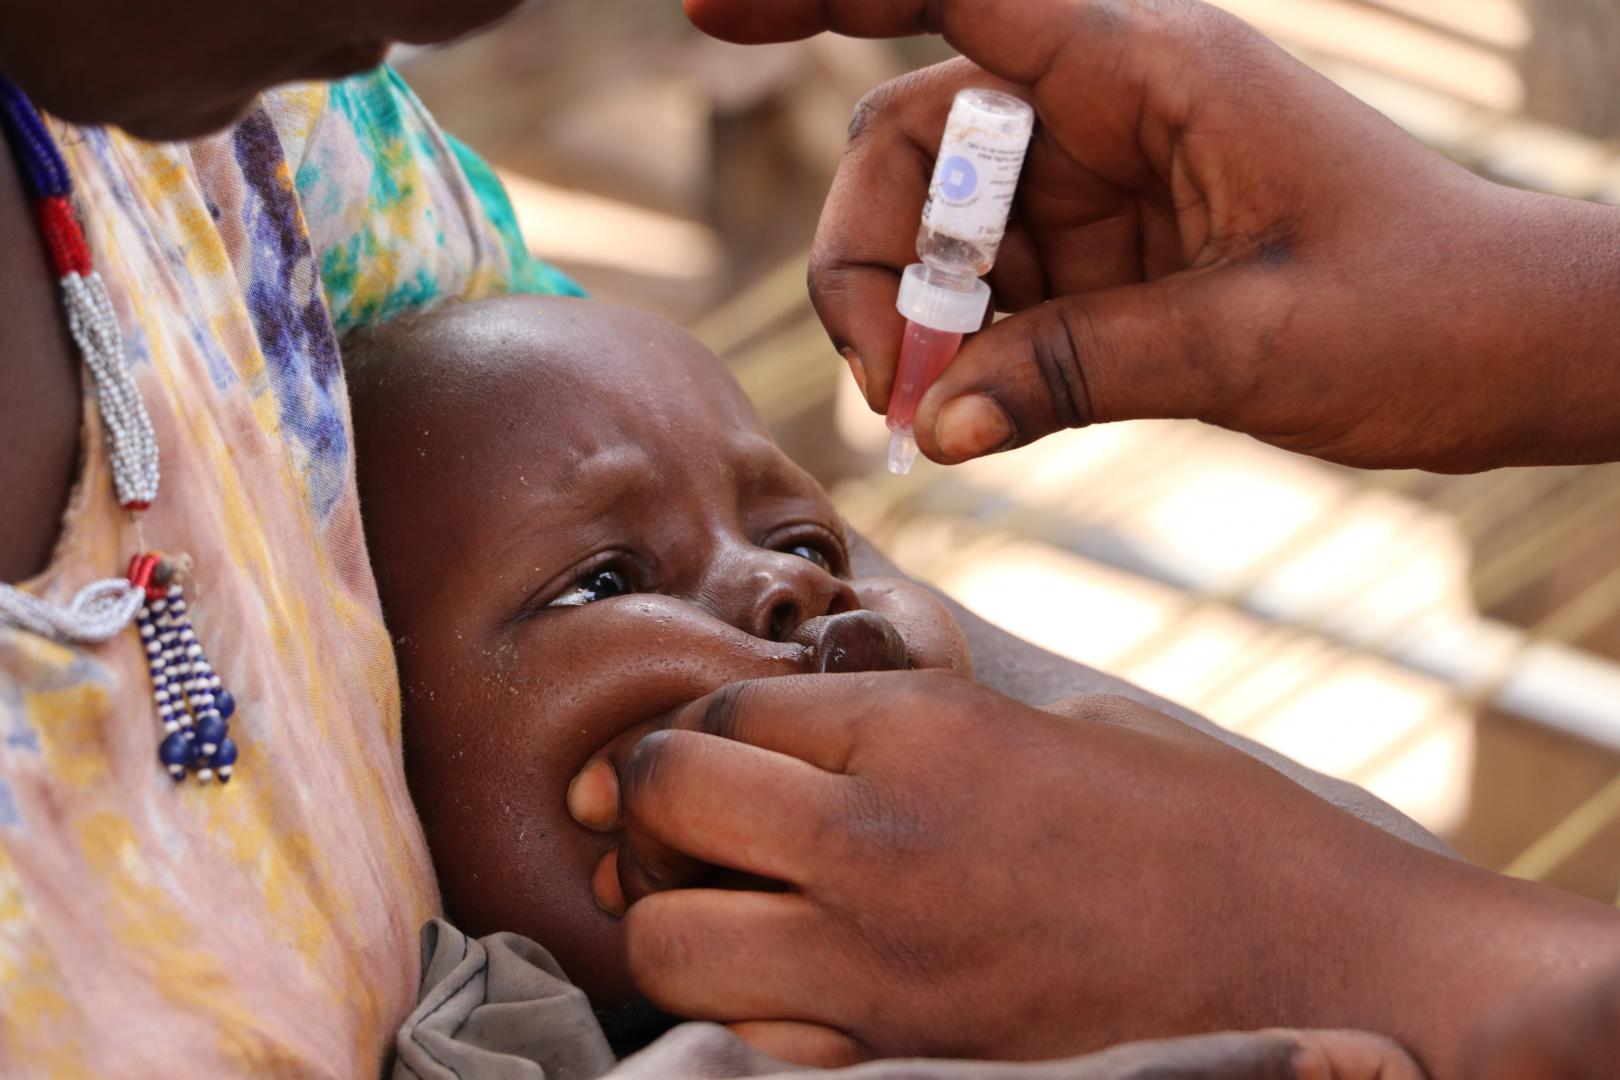 Νότια Αφρική Μαλάουι: Ο εμβολιασμός κατά της πολιομυελίτιδας ξεκινά τον επόμενο μήνα μετά το ξέσπασμα της επιδημίας